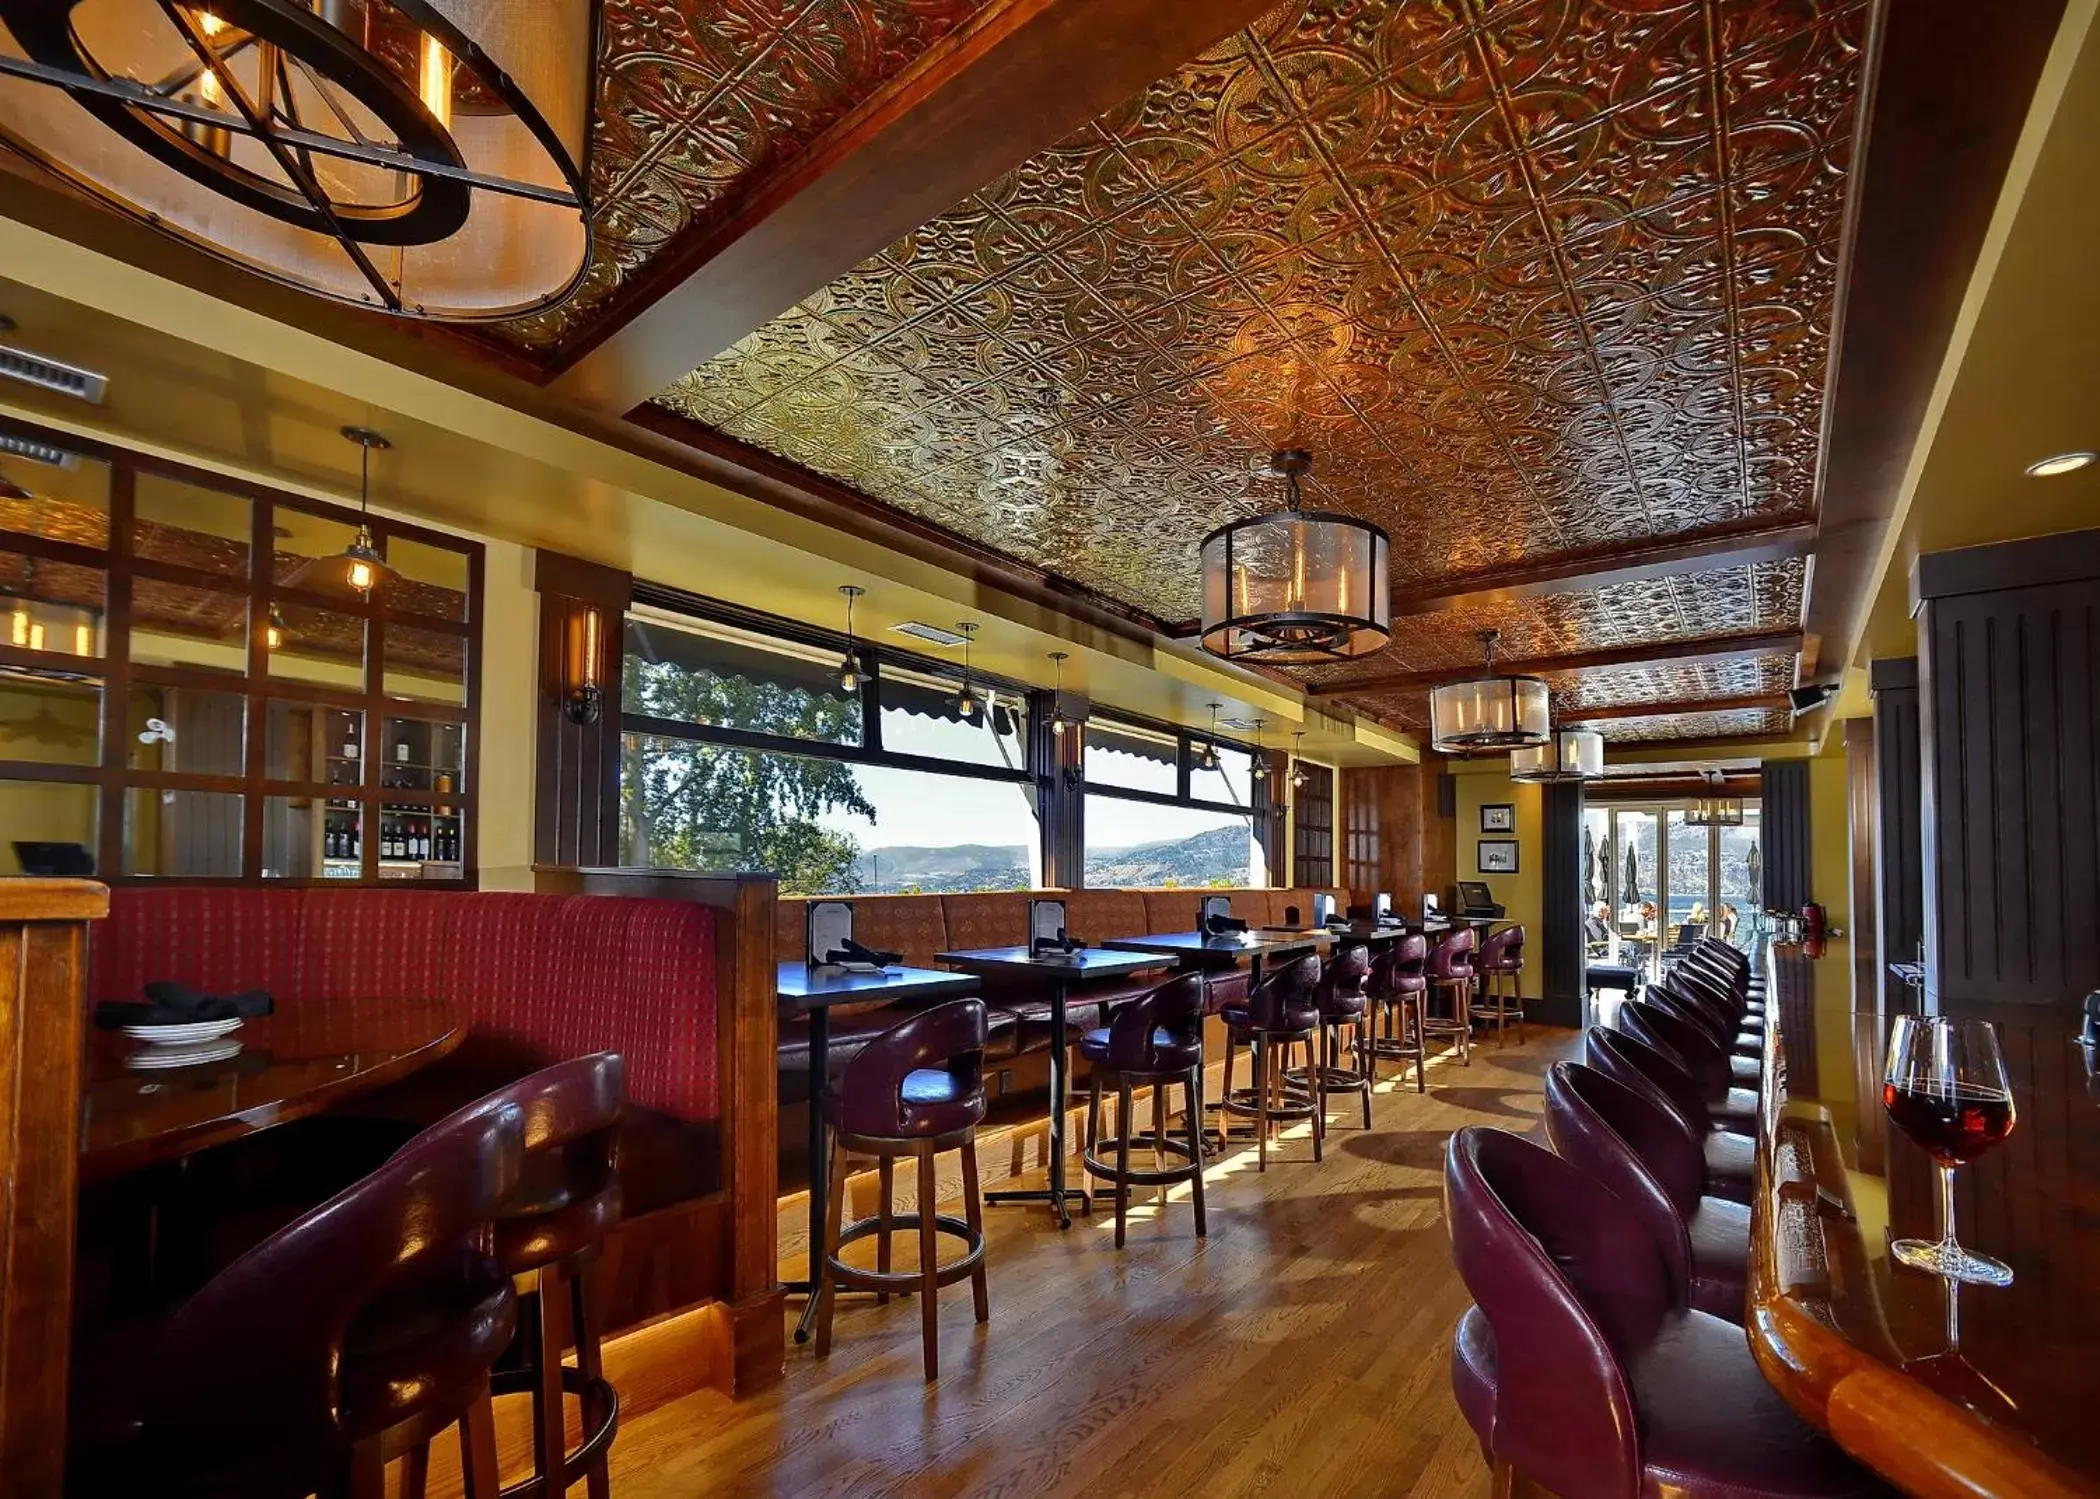 Lounge or bar, Restaurant/Places to Eat in Hotel Eldorado at Eldorado Resort